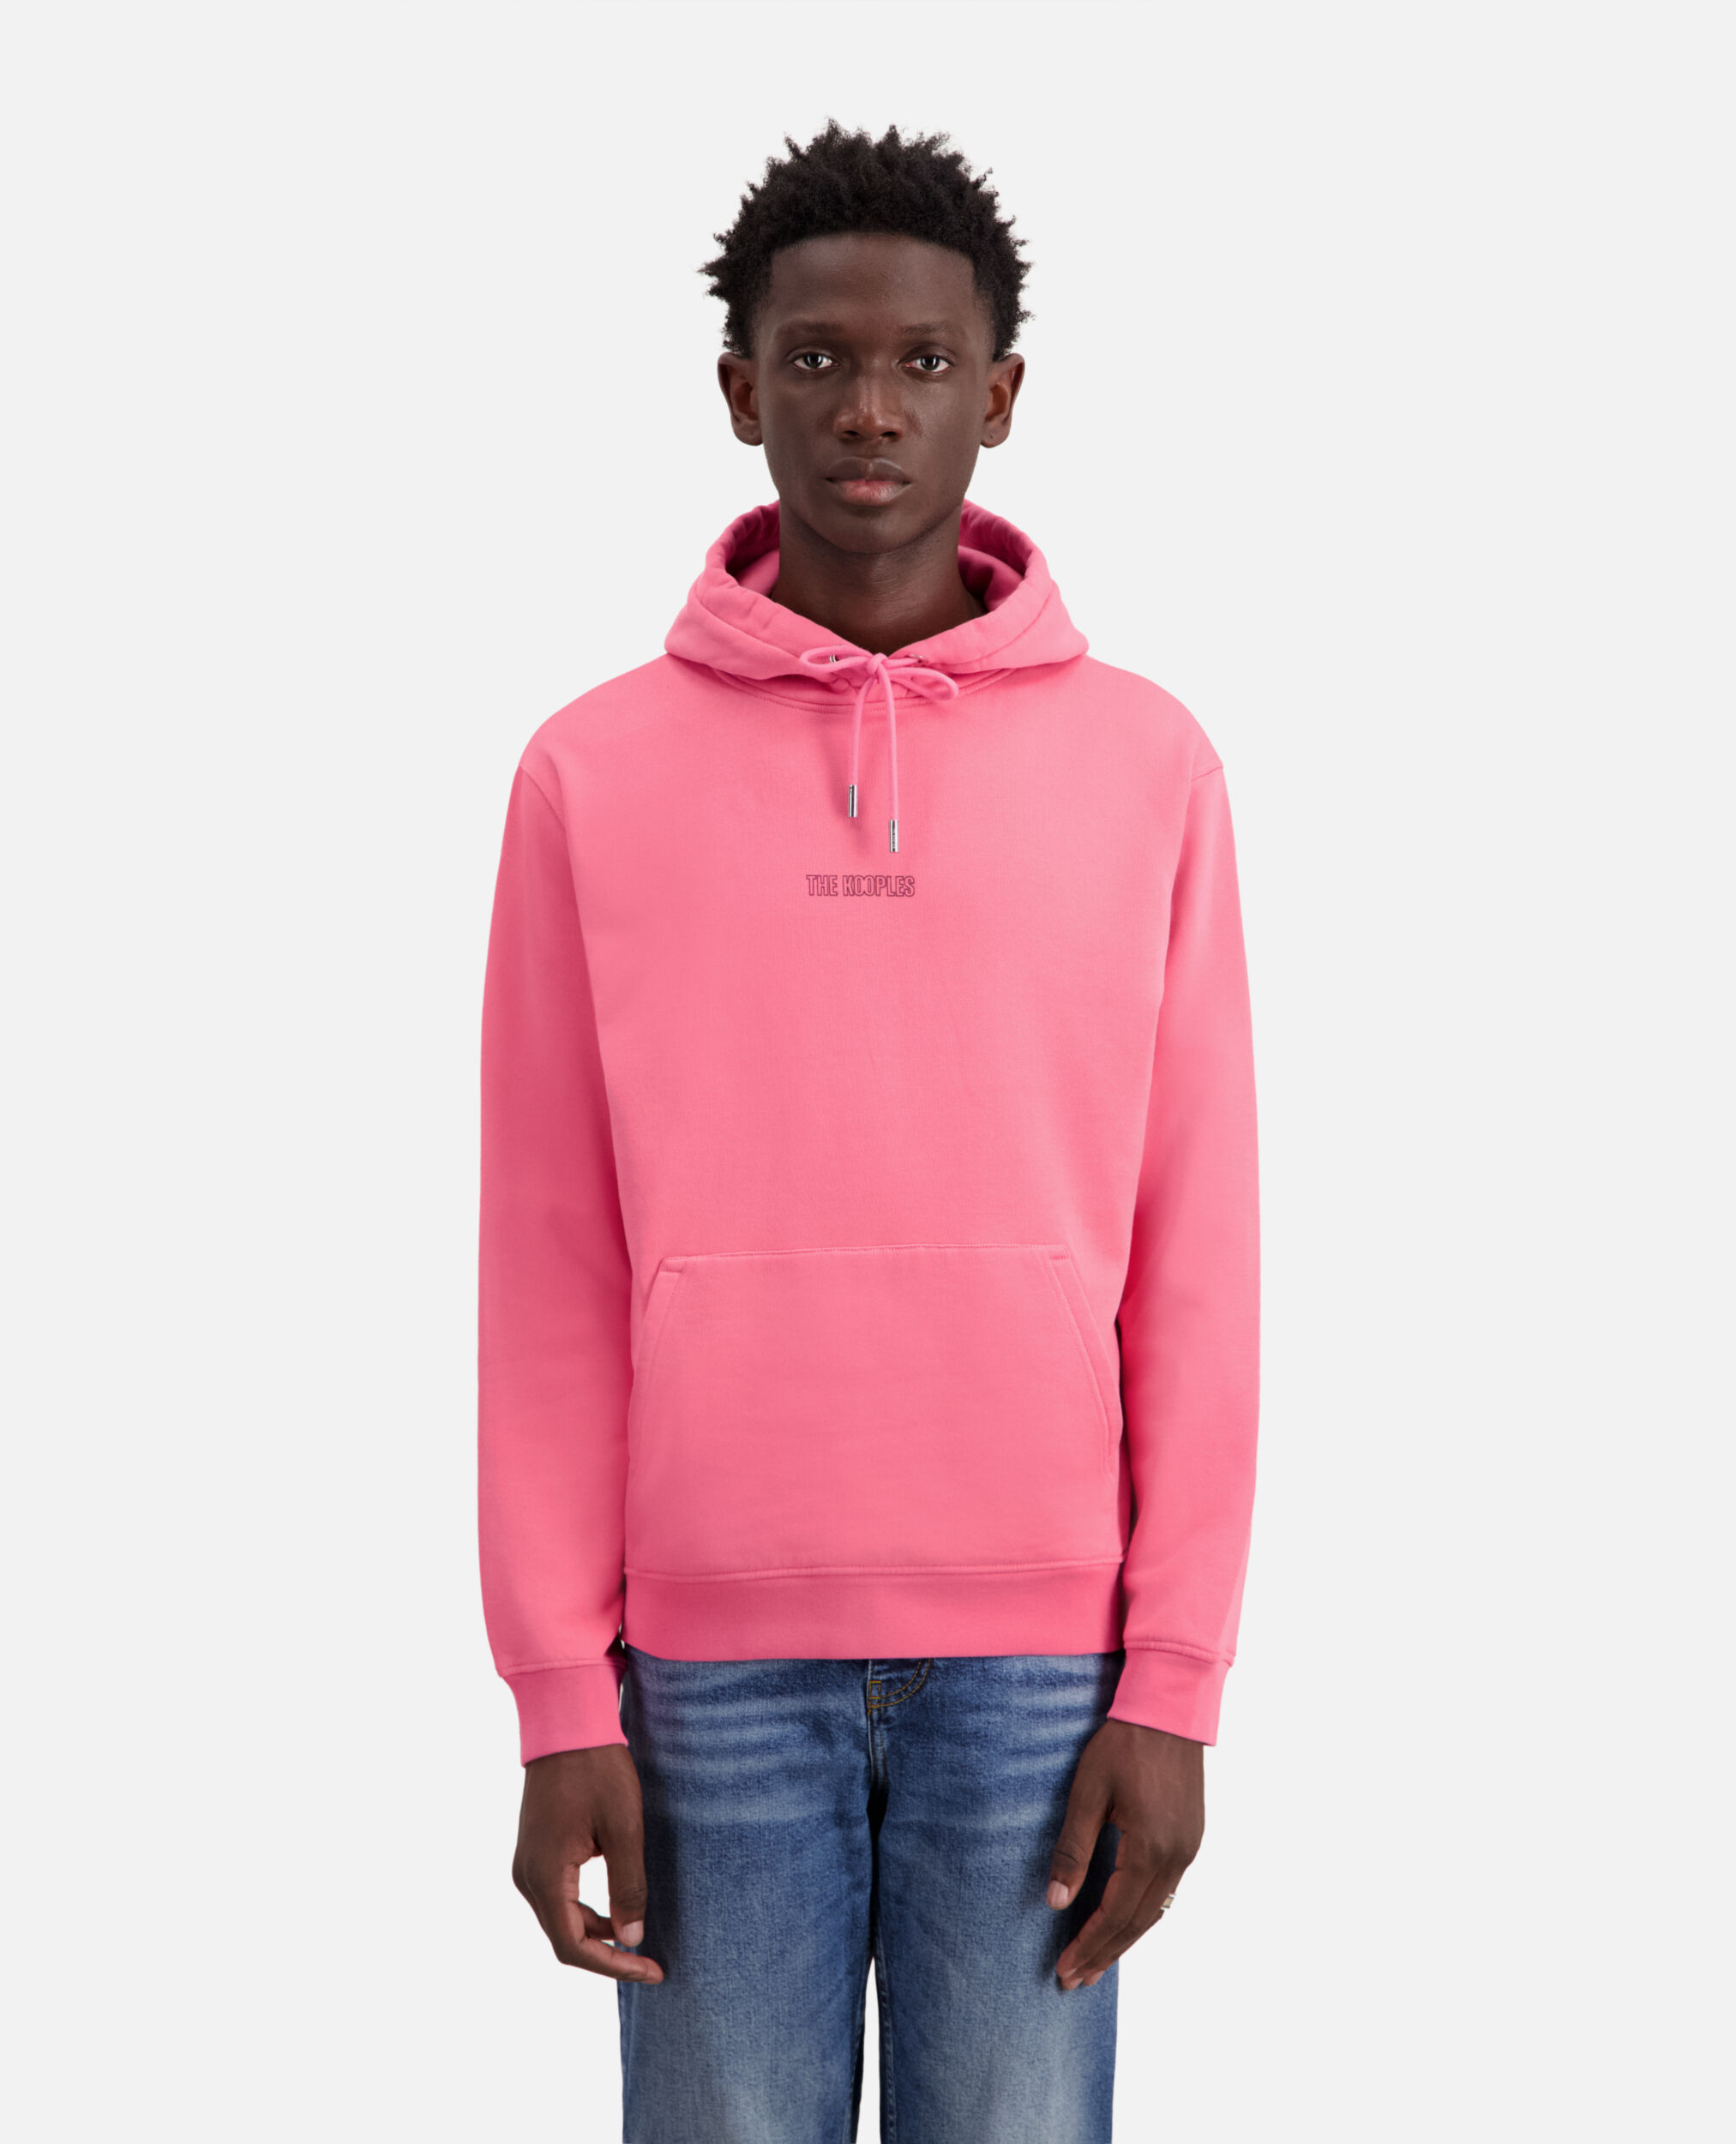 Sweatshirt Homme à capuche rose avec logo, OLD PINK, hi-res image number null